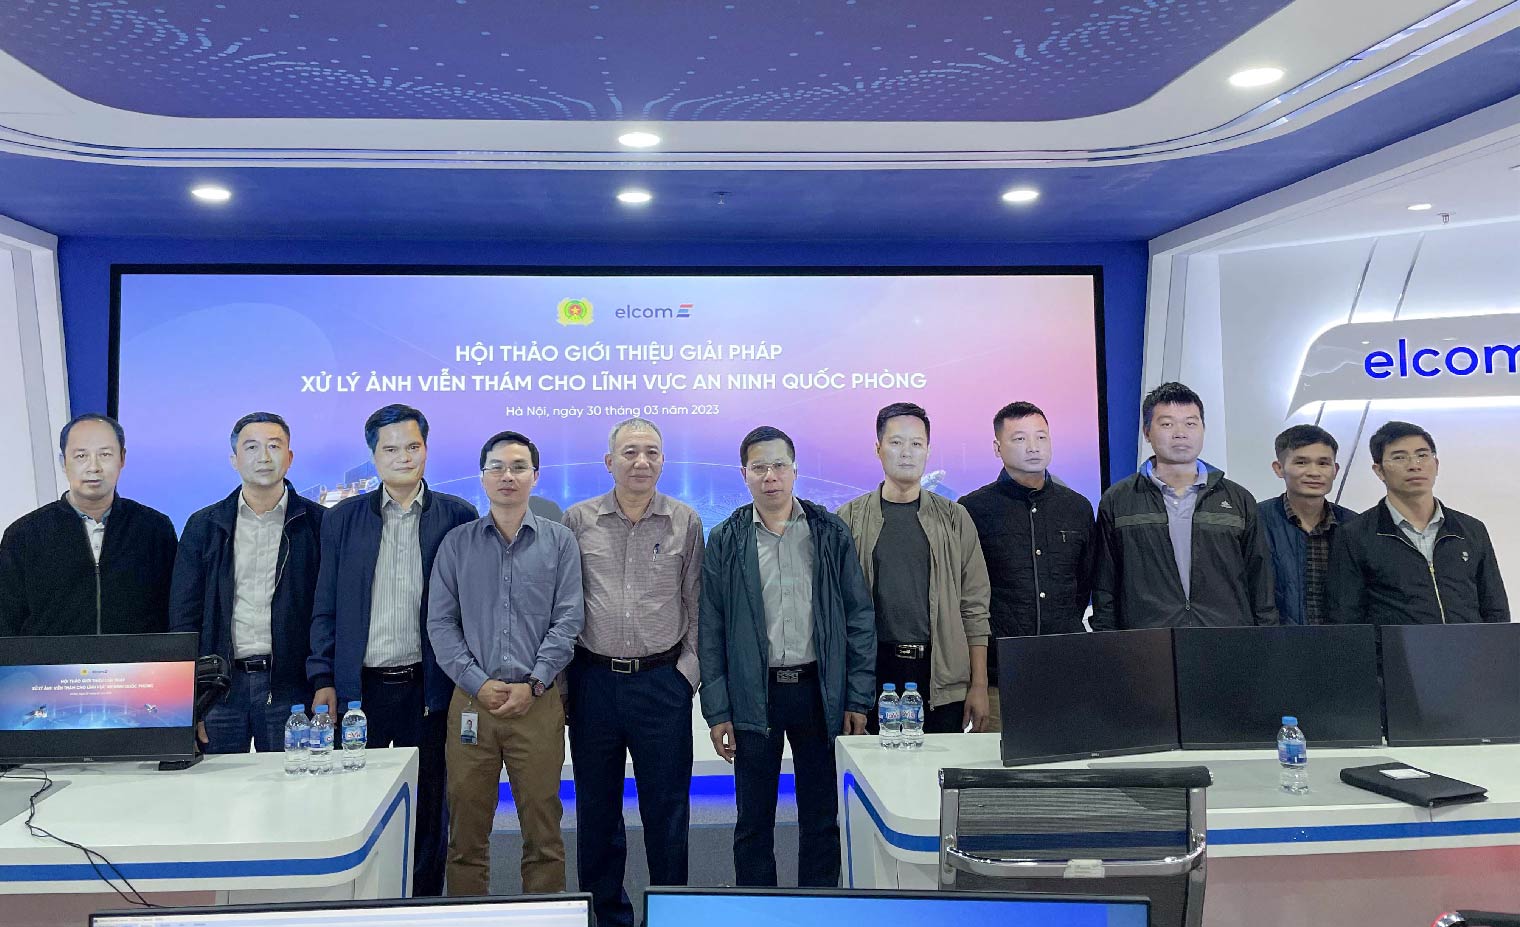 Elcom phối hợp với Bộ Công an chủ trì hội thảo về công nghệ xử lý ảnh viễn thám